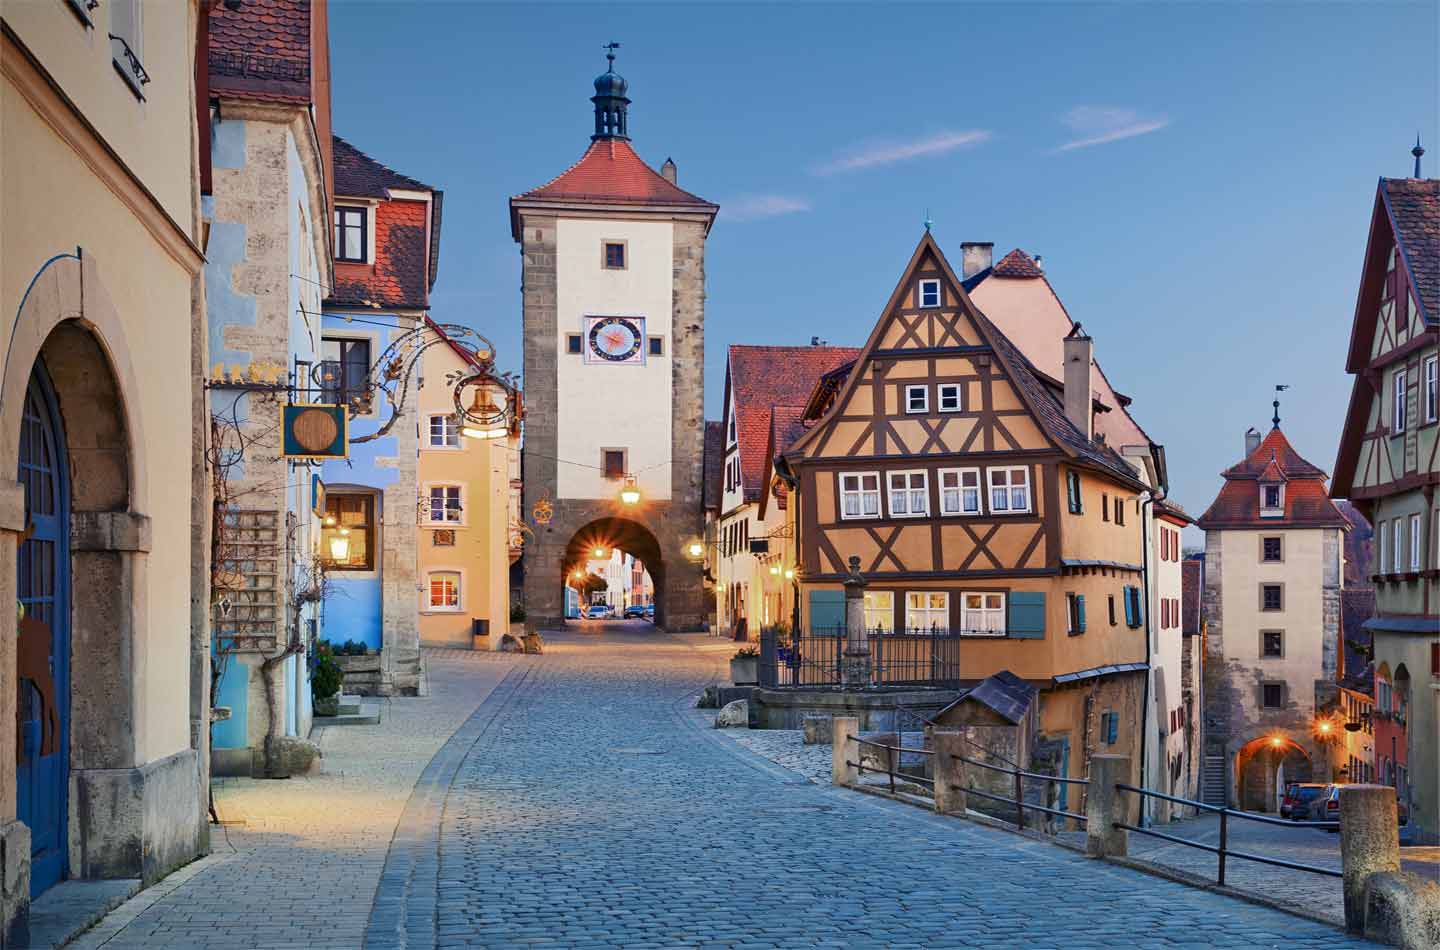 Stadtkern Rothenburg ob der Tauber